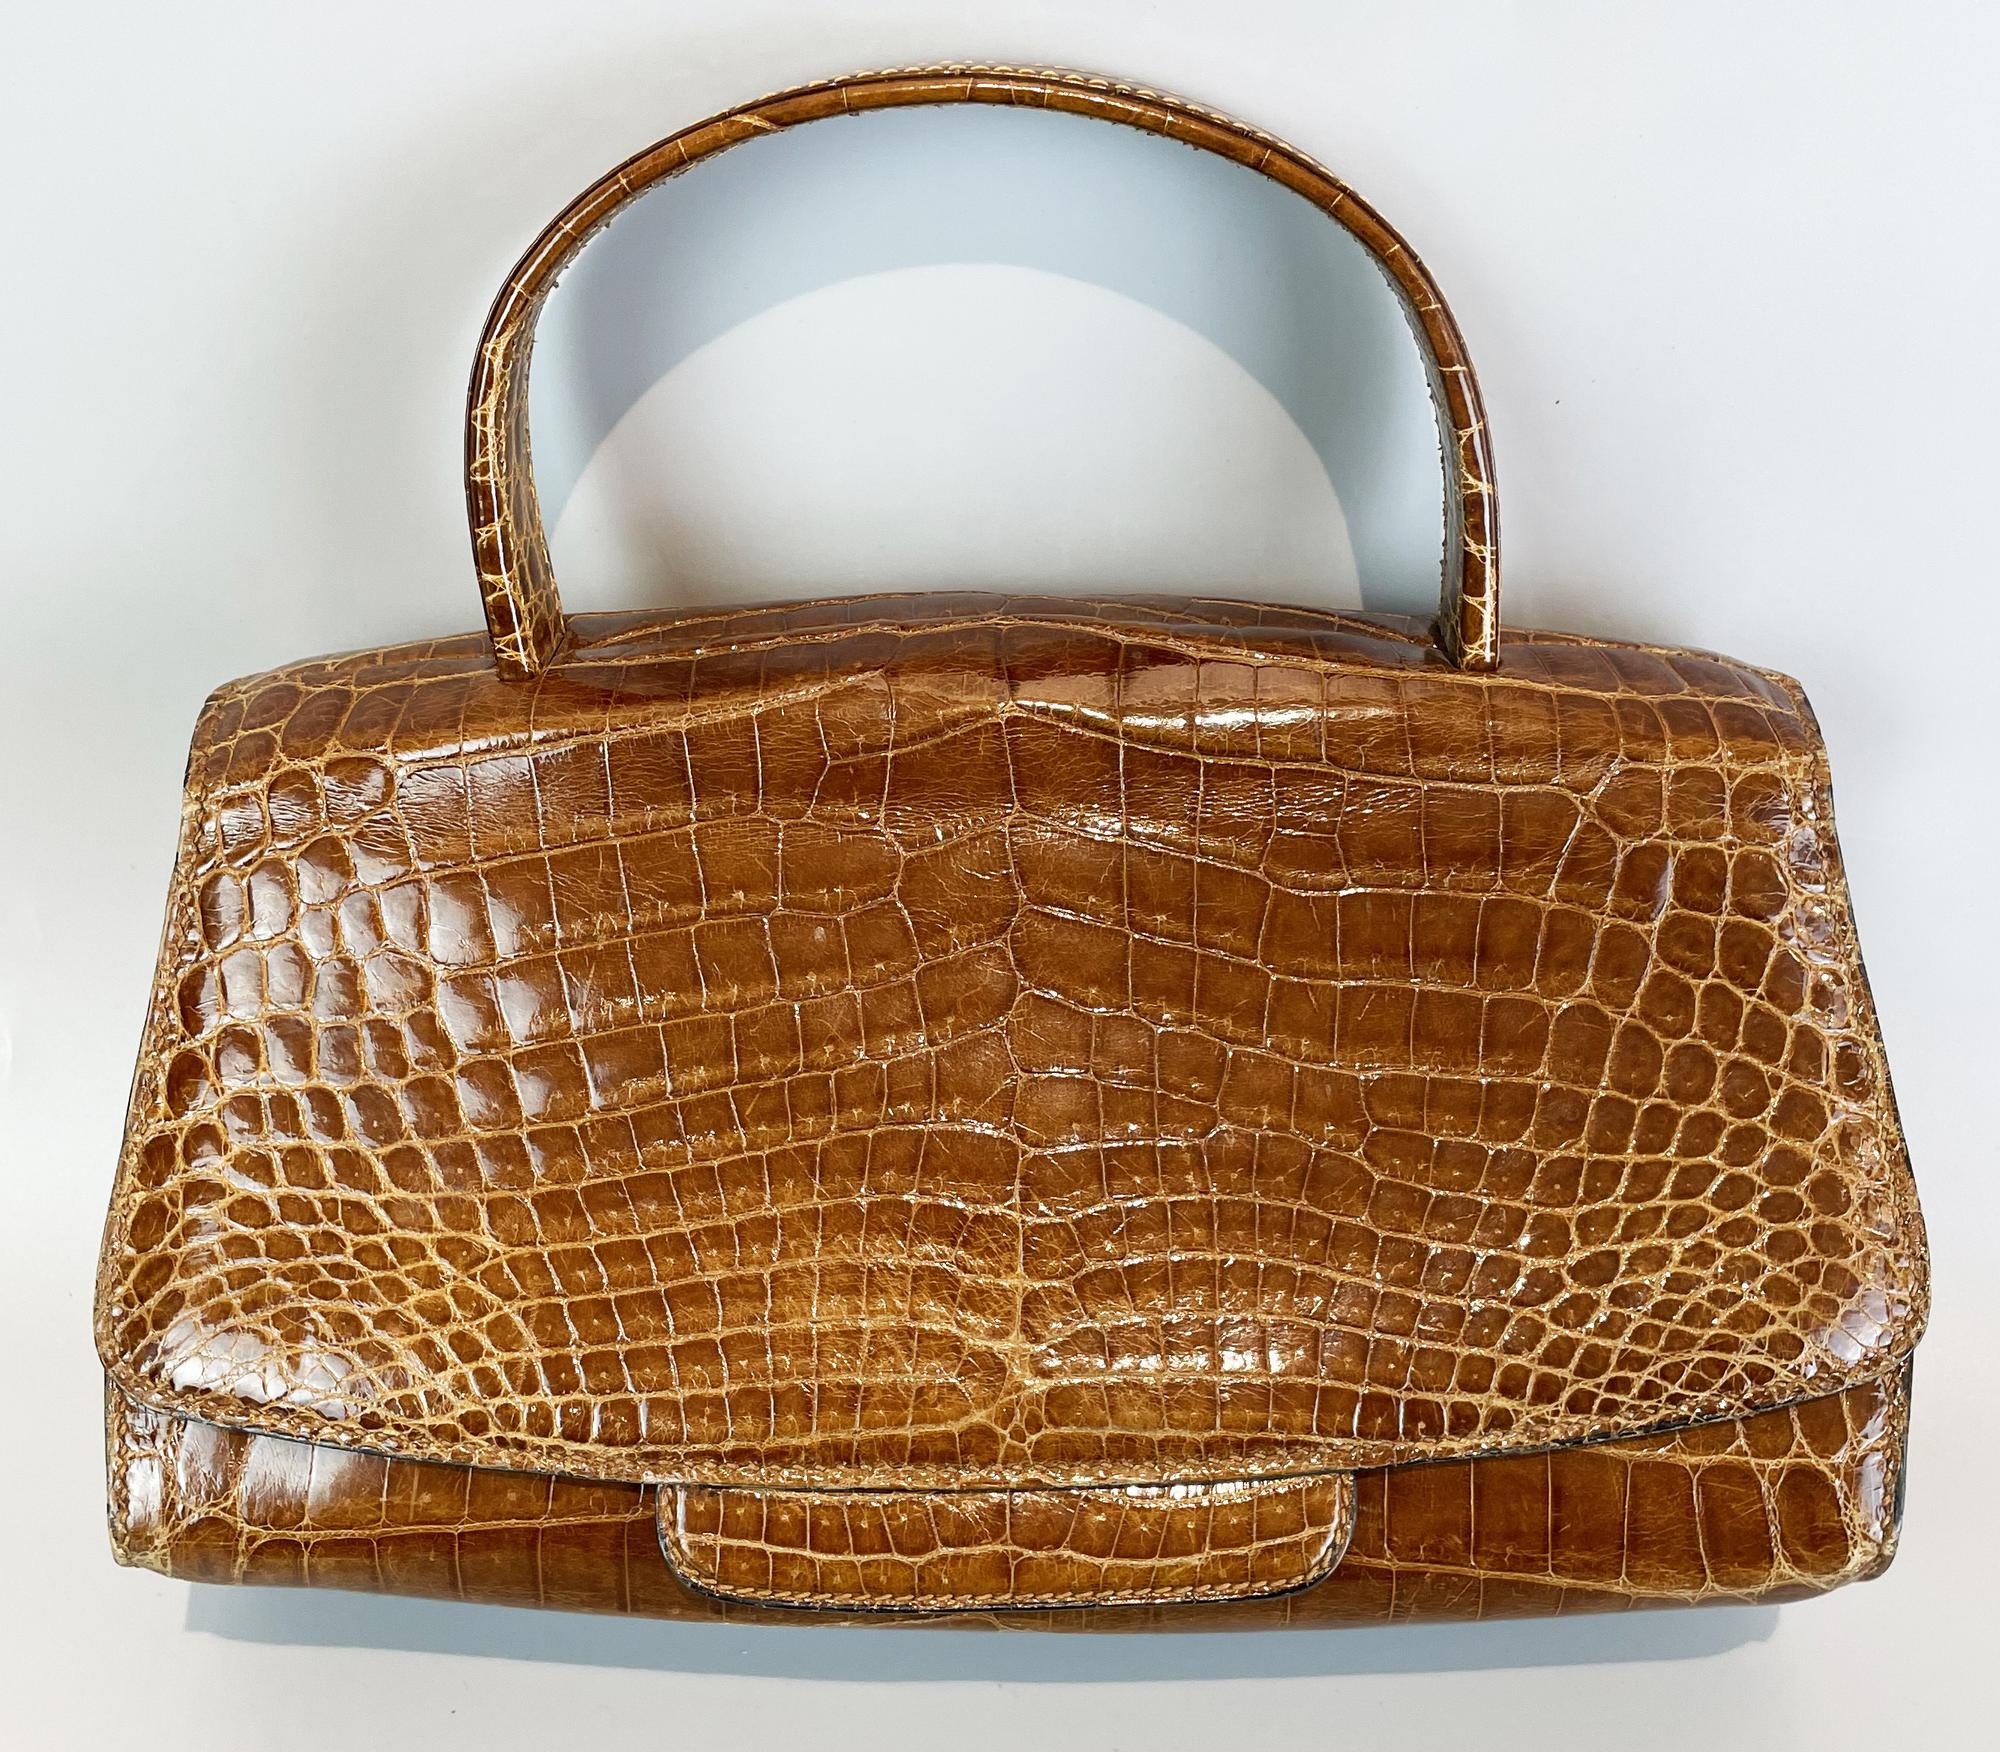 Valextra CROCODILE HANDBAG Description: Crocodile handbag with interior...